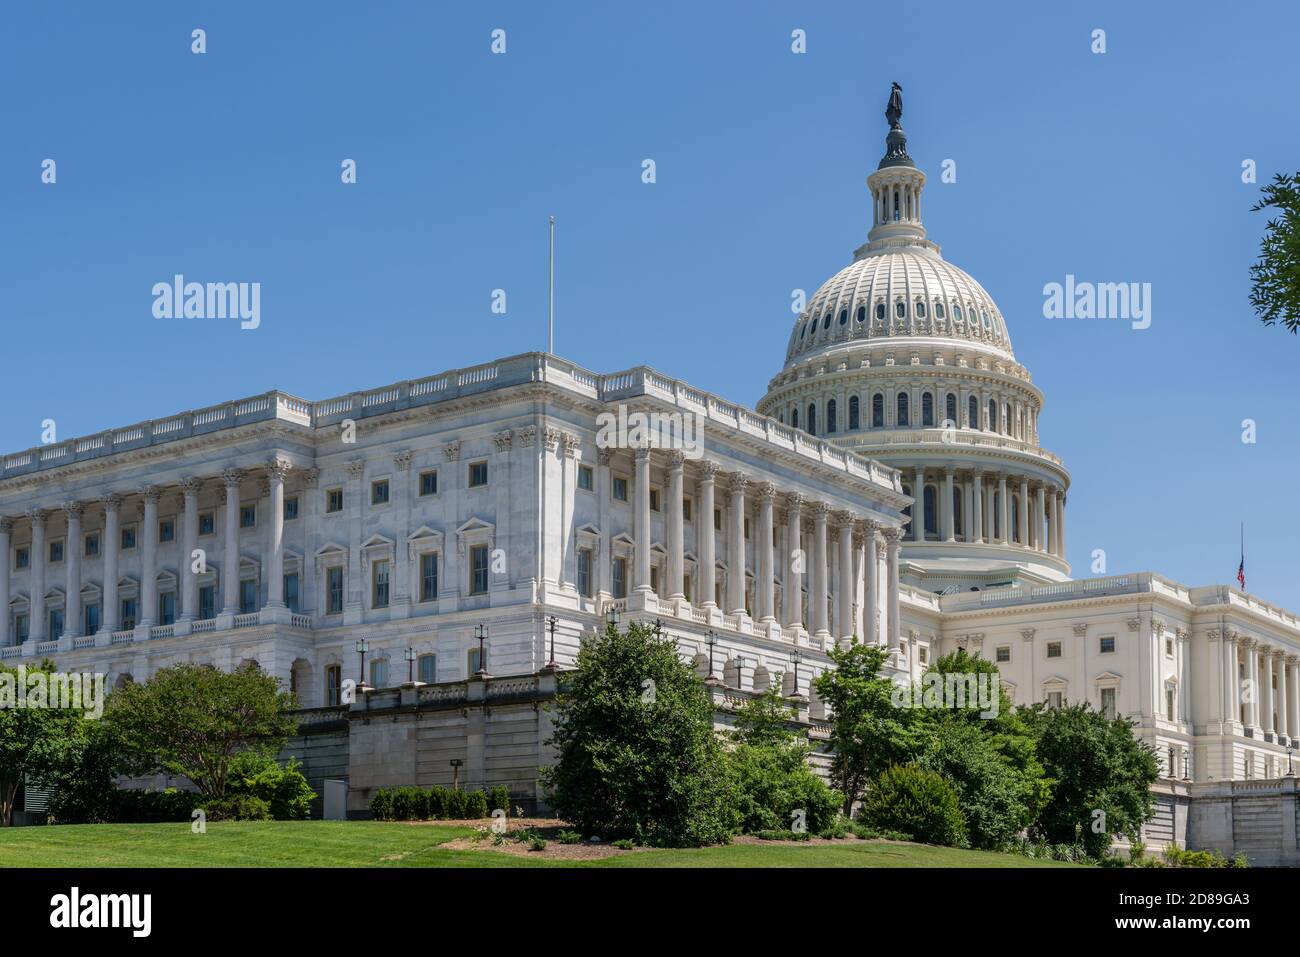 Thomas U. Walters großartige gusseiserne Kuppel des US Capitol erhebt sich 288' über dem Senatsgebäude und dem Capitol Hill in Washington DC Stockfoto